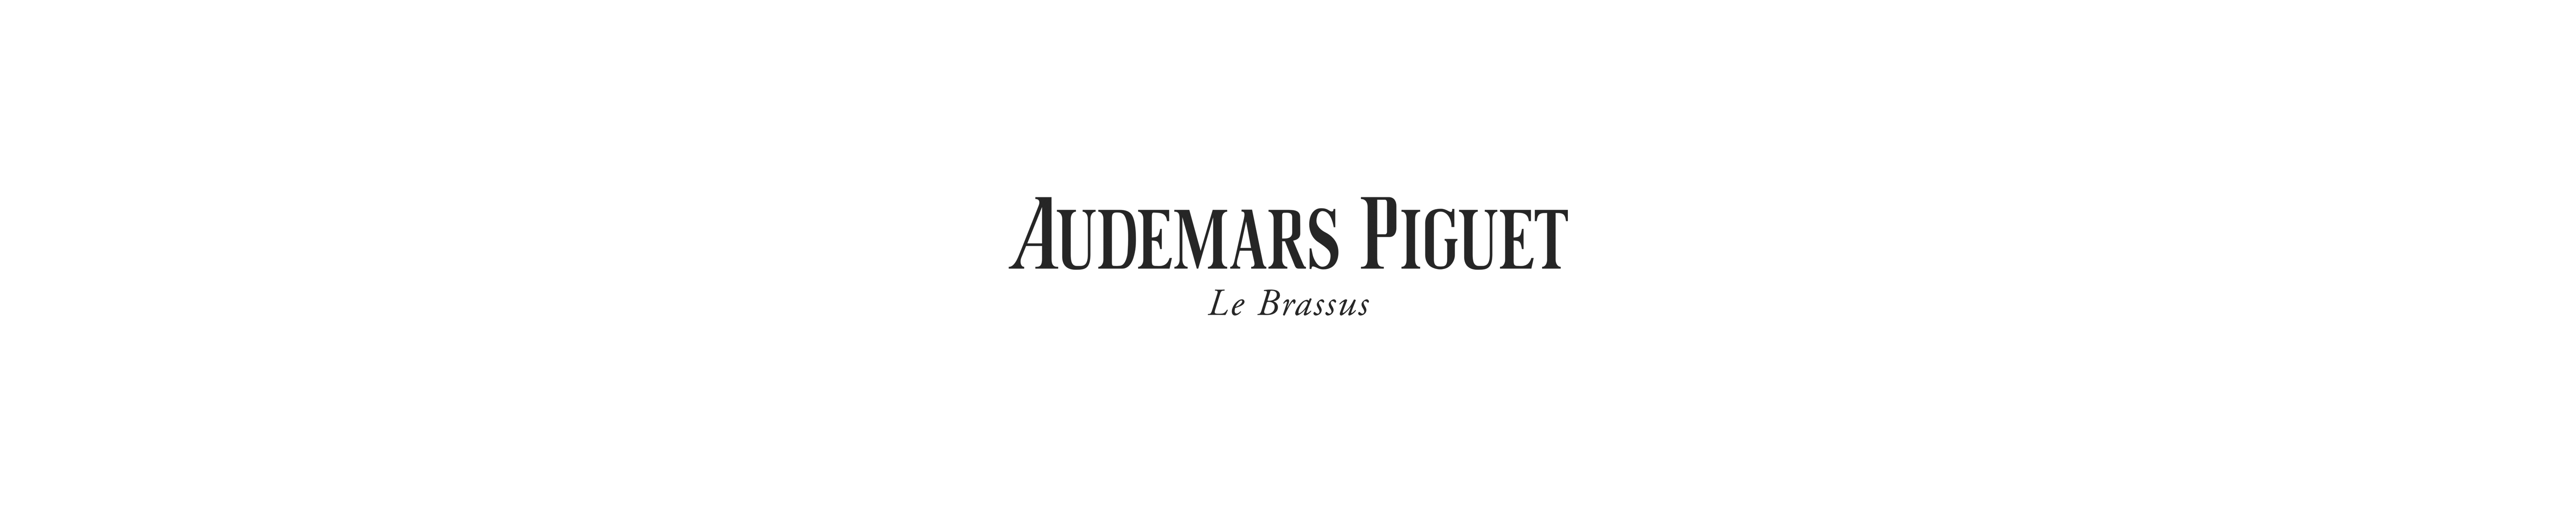 The History of Audemars Piguet